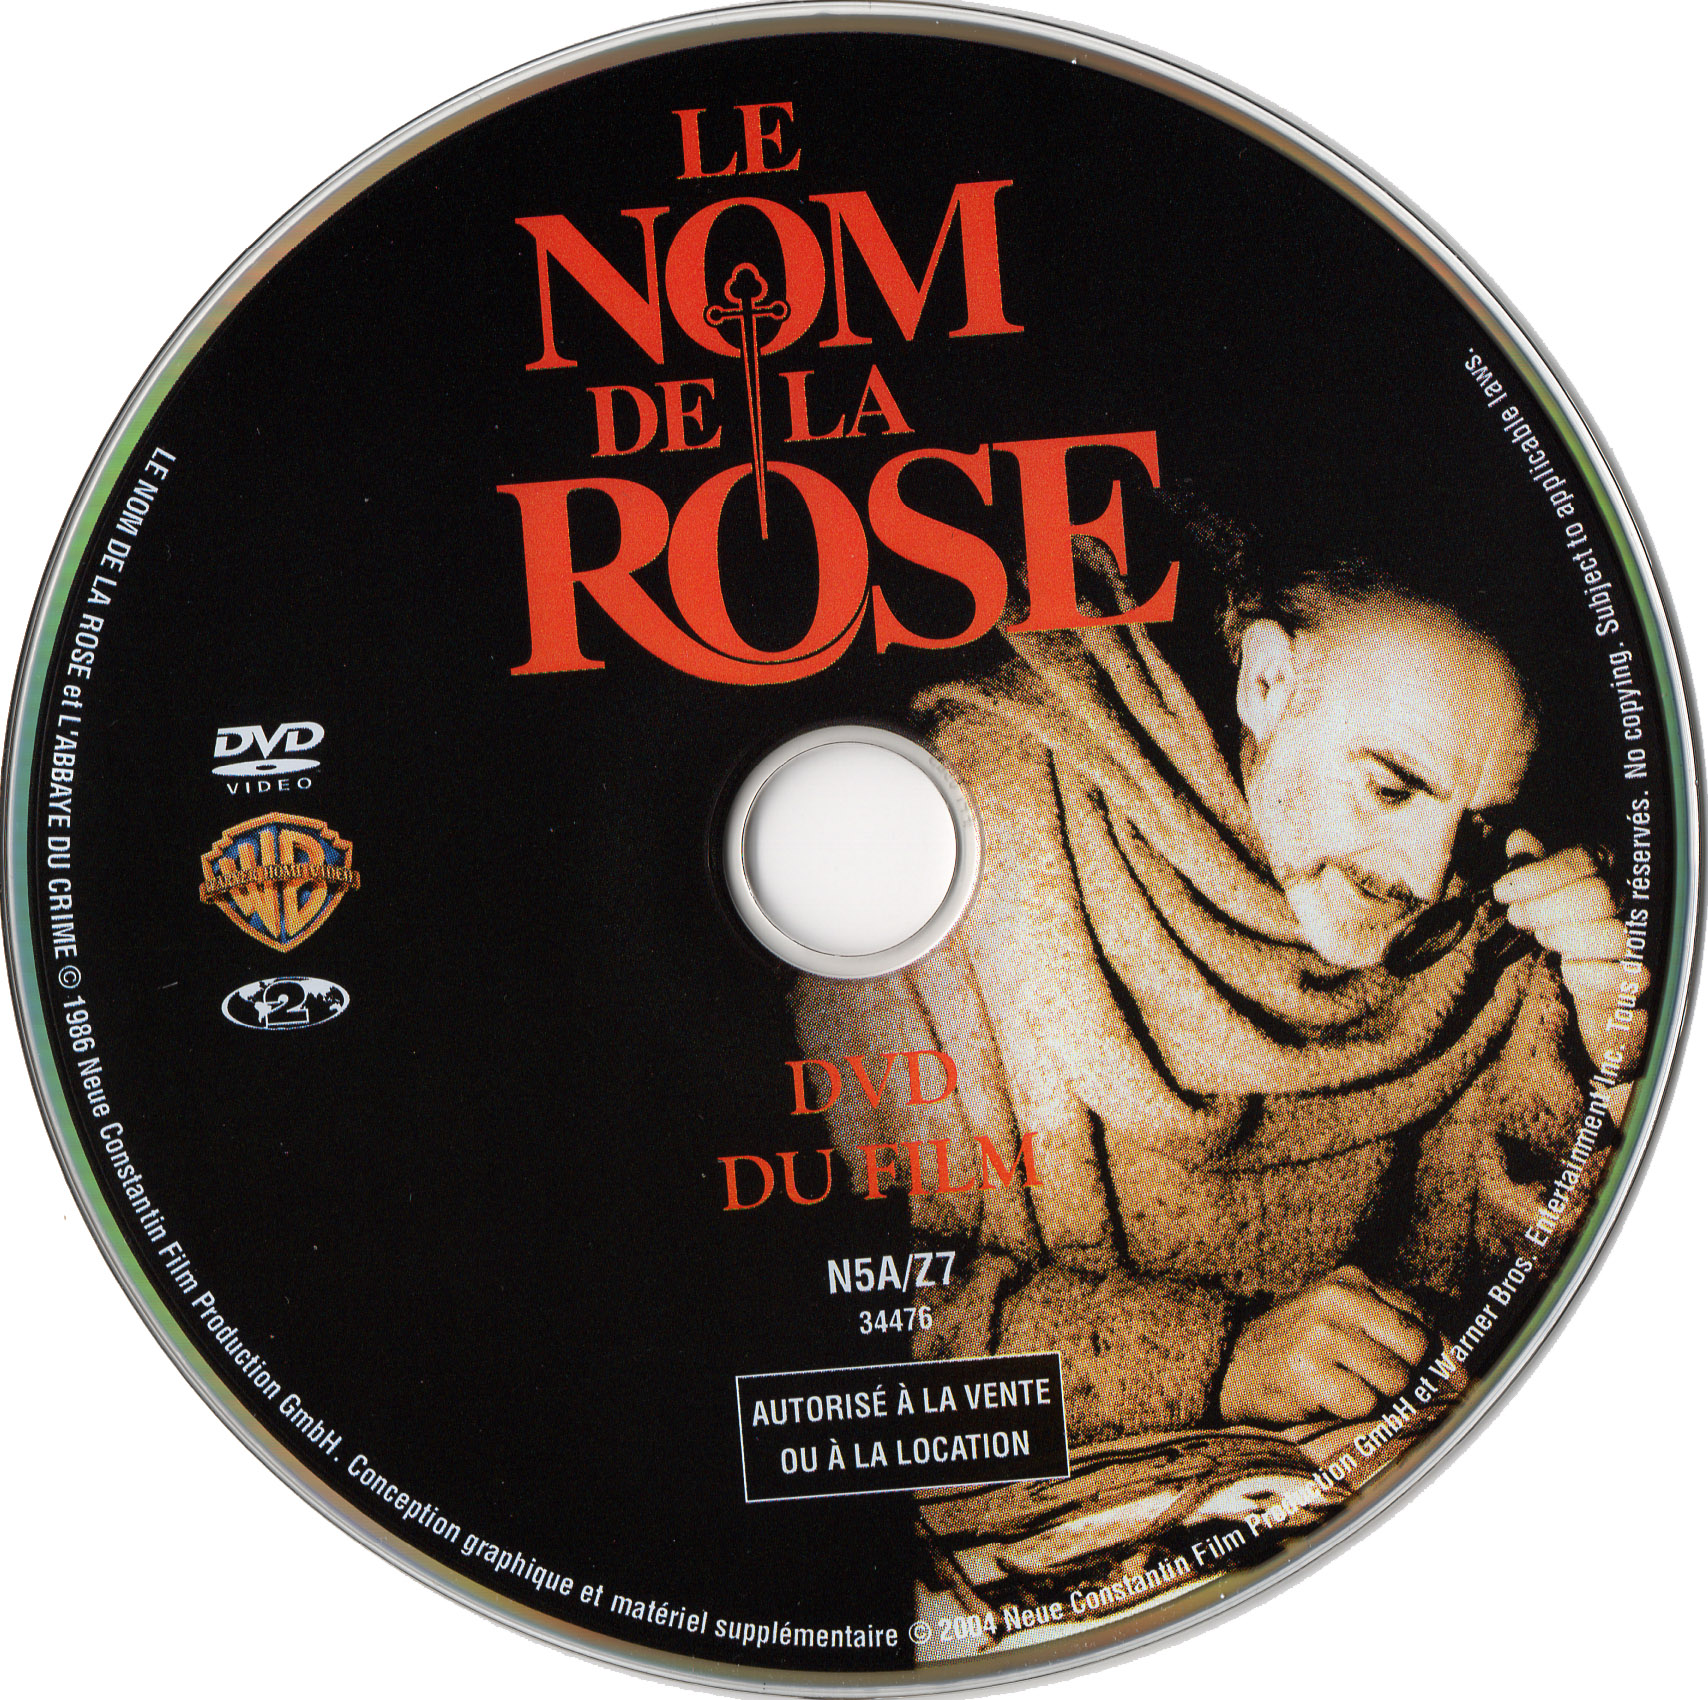 Le nom de la rose DISC 1